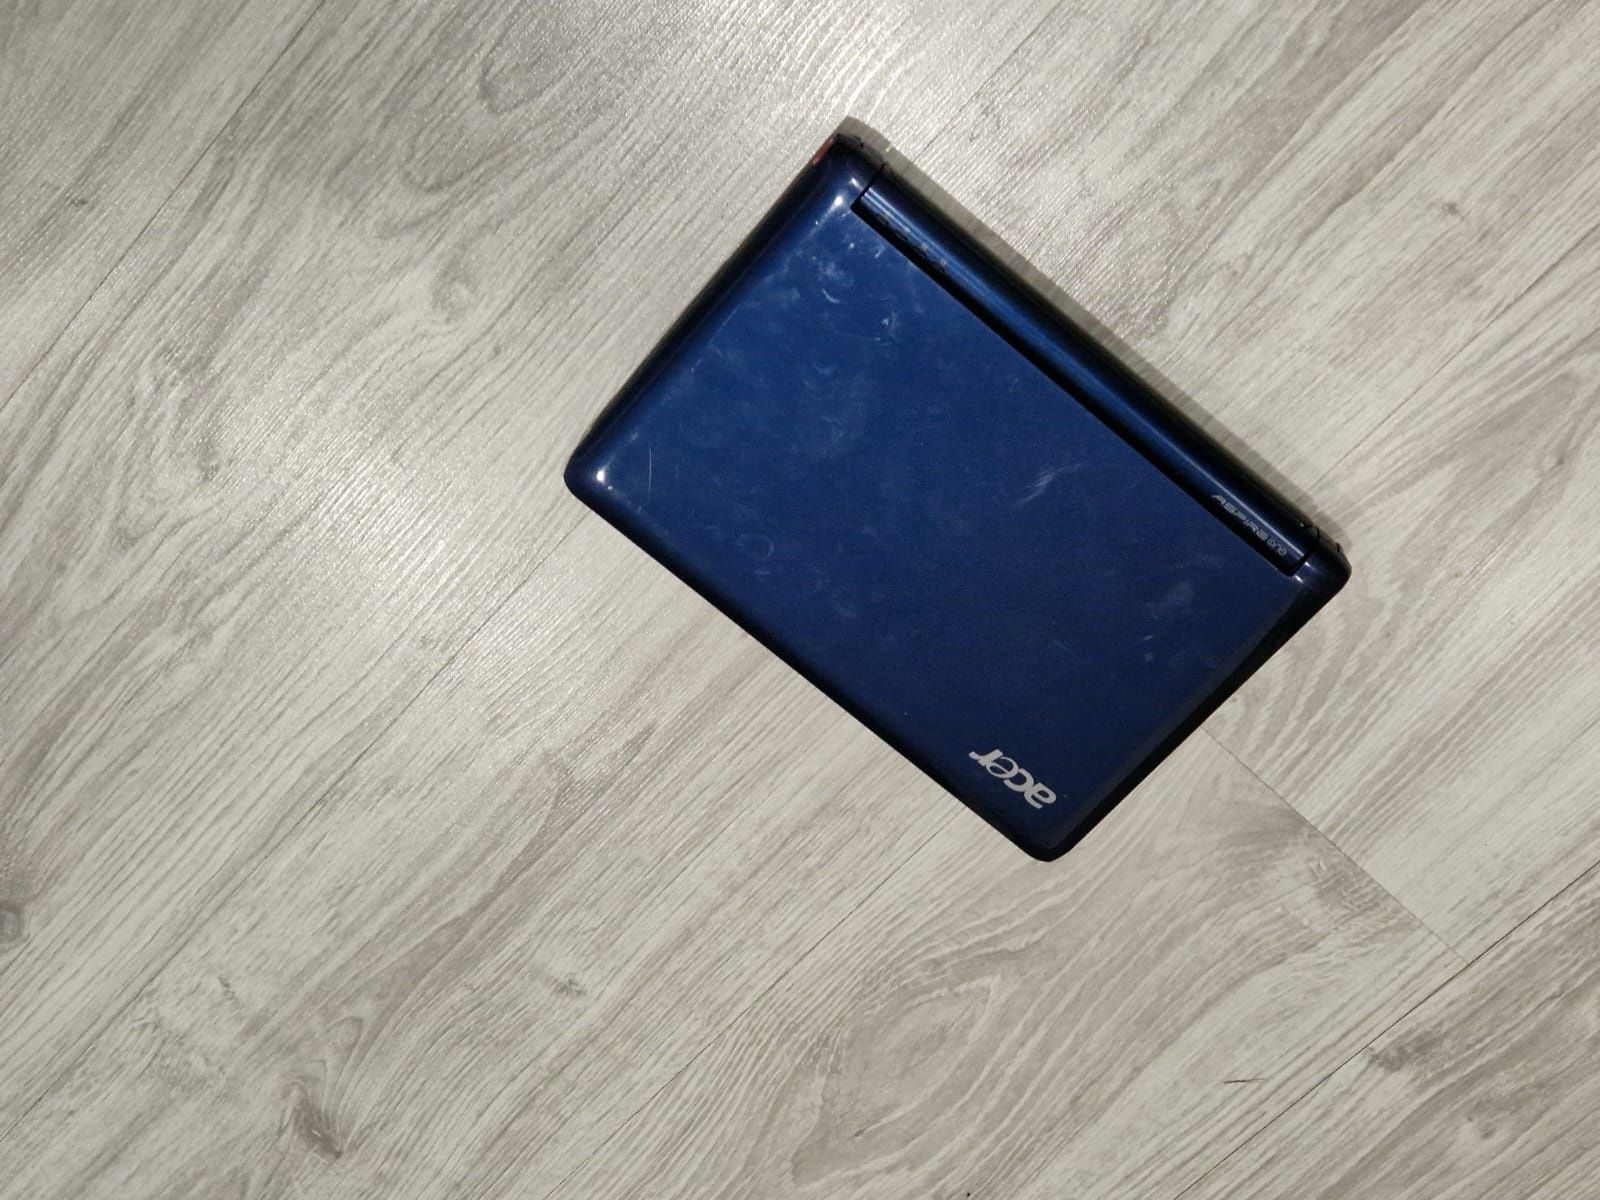 Mini Laptop Acer  perfect funcțional